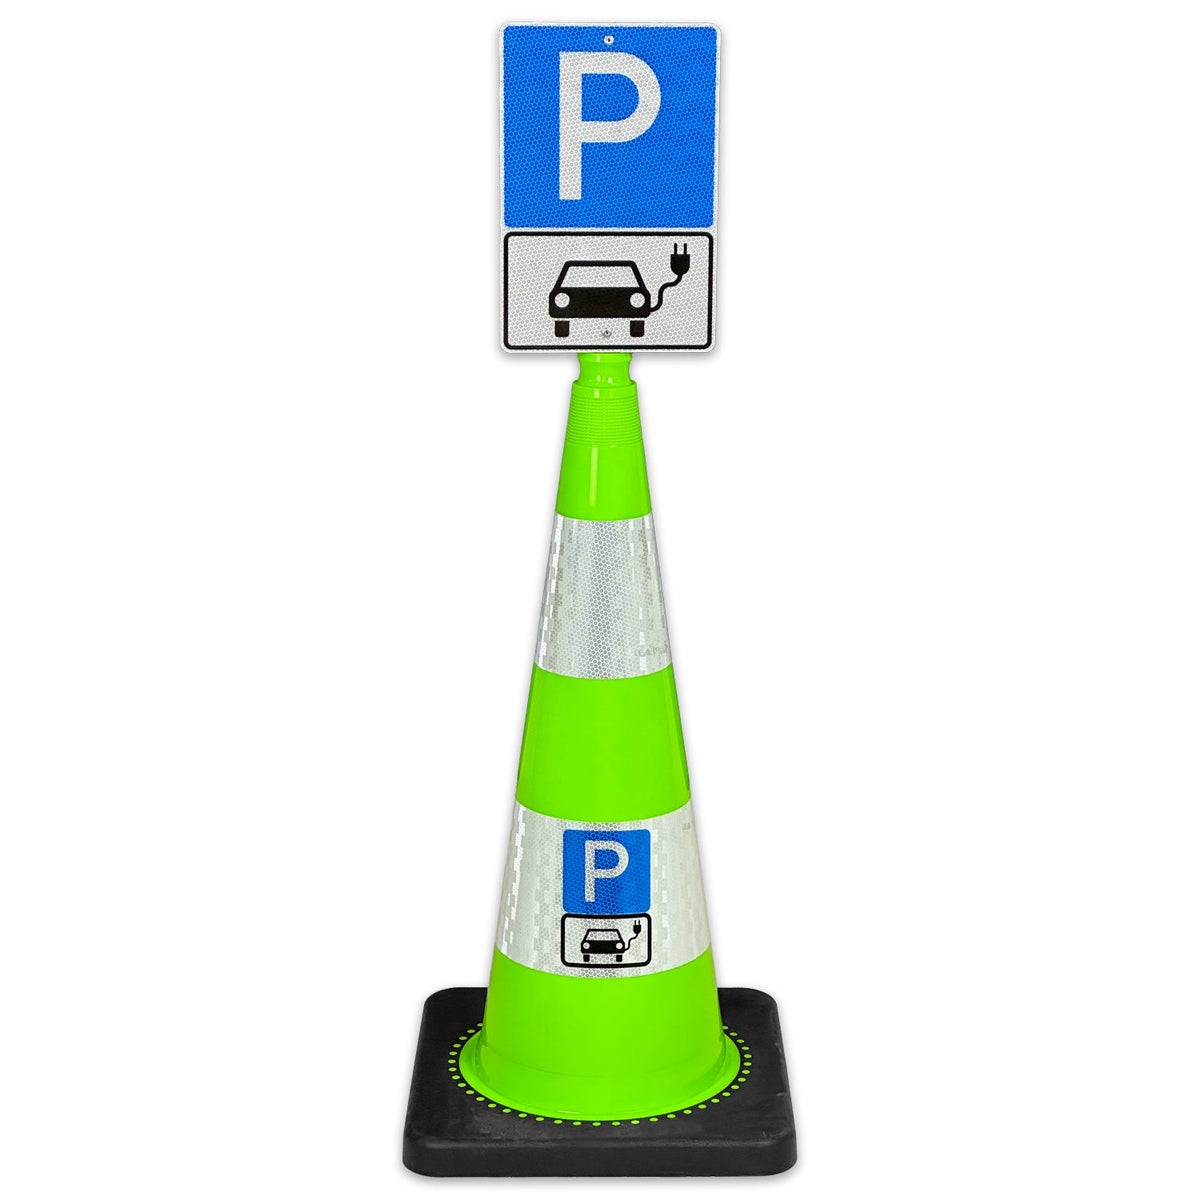 Leitkegel FLEX 75cm hoch mit Schild 30 x 20cm Parkplatz nur für Elektroautos / mit reflektierender Folie und Hinweisschild / Leitkegel grün